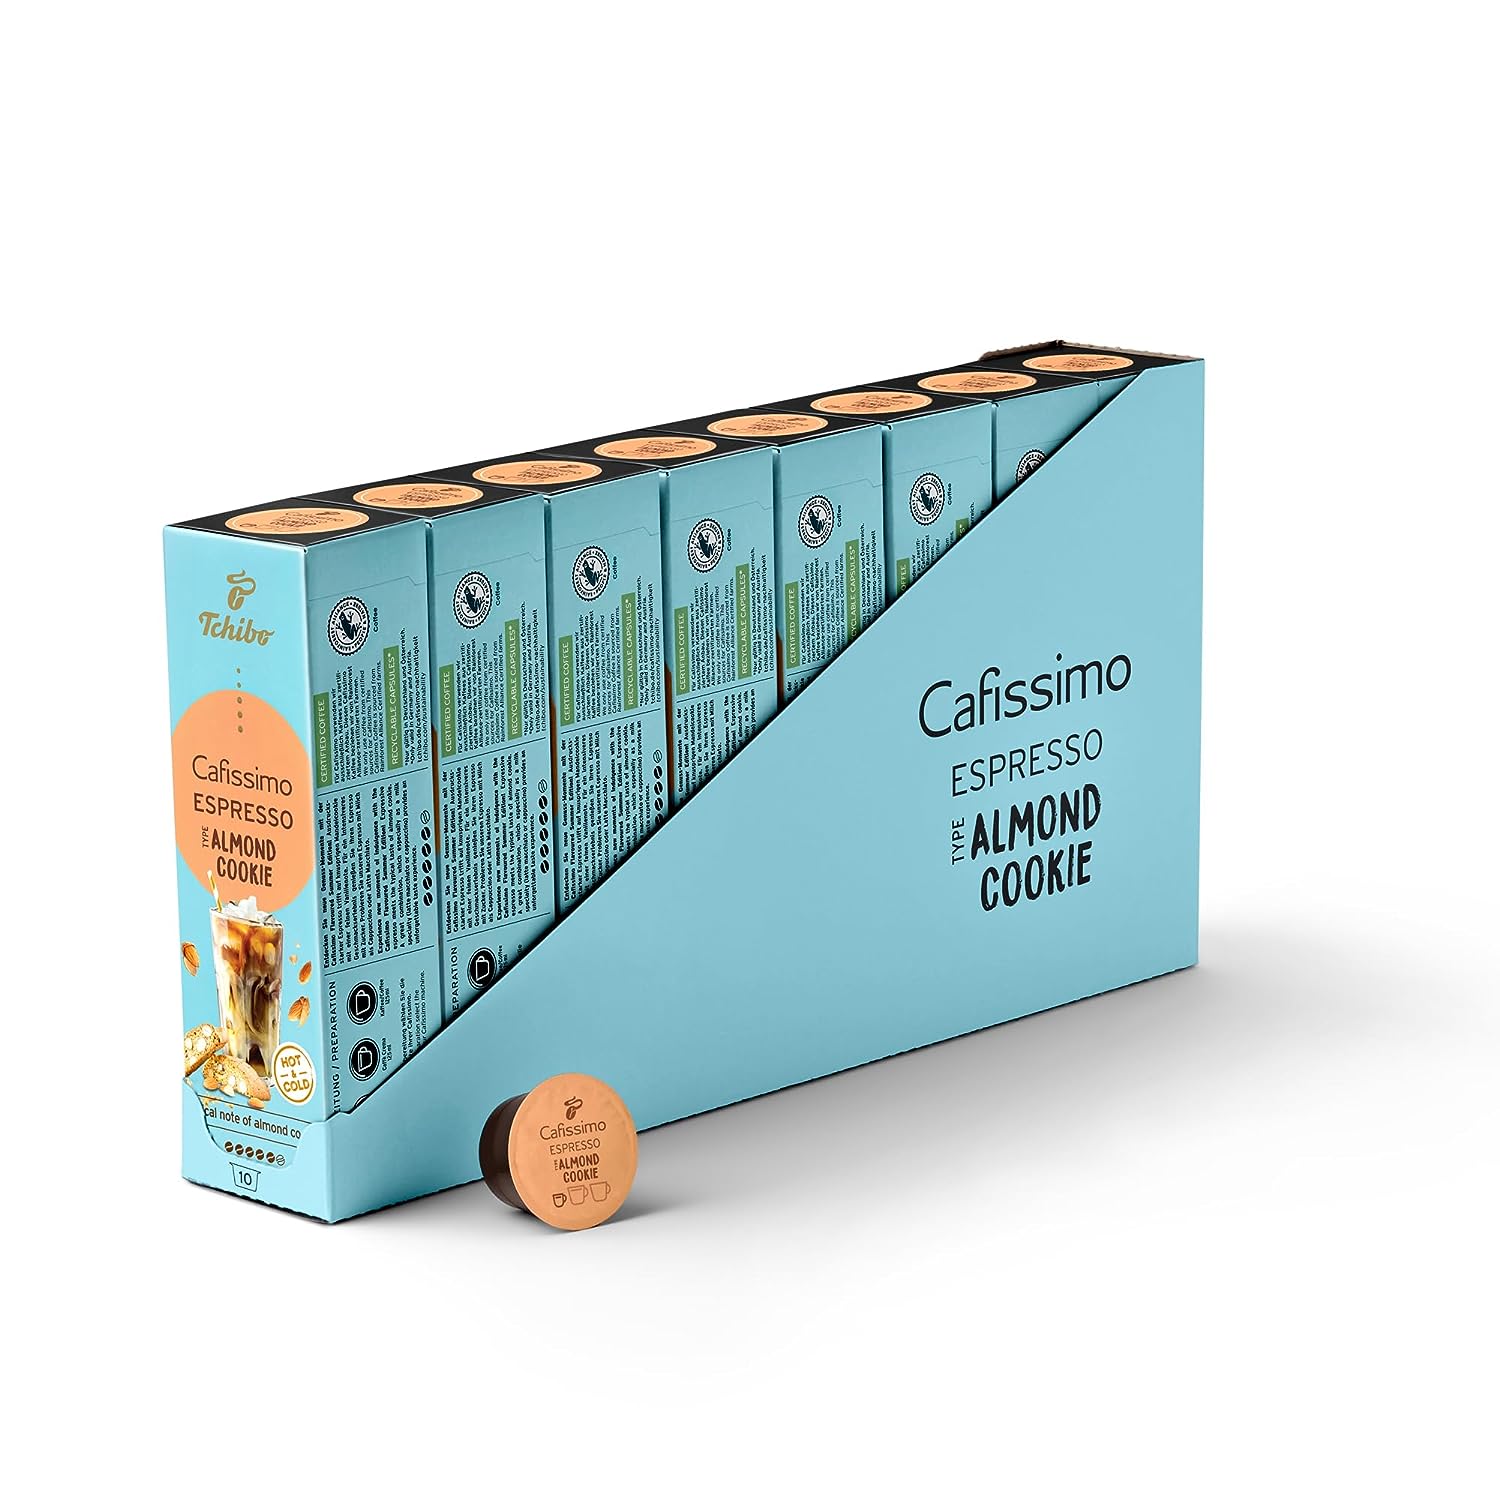 Tchibo Cafissimo Vorratsbox Espresso Almond Cookie Kaffeekapseln, 80 Stück – 8x 10 Kapseln (Espresso, aromatisch mit Mandelkeks-Geschmack), nachhaltig & fair gehandelt, Limited Edition